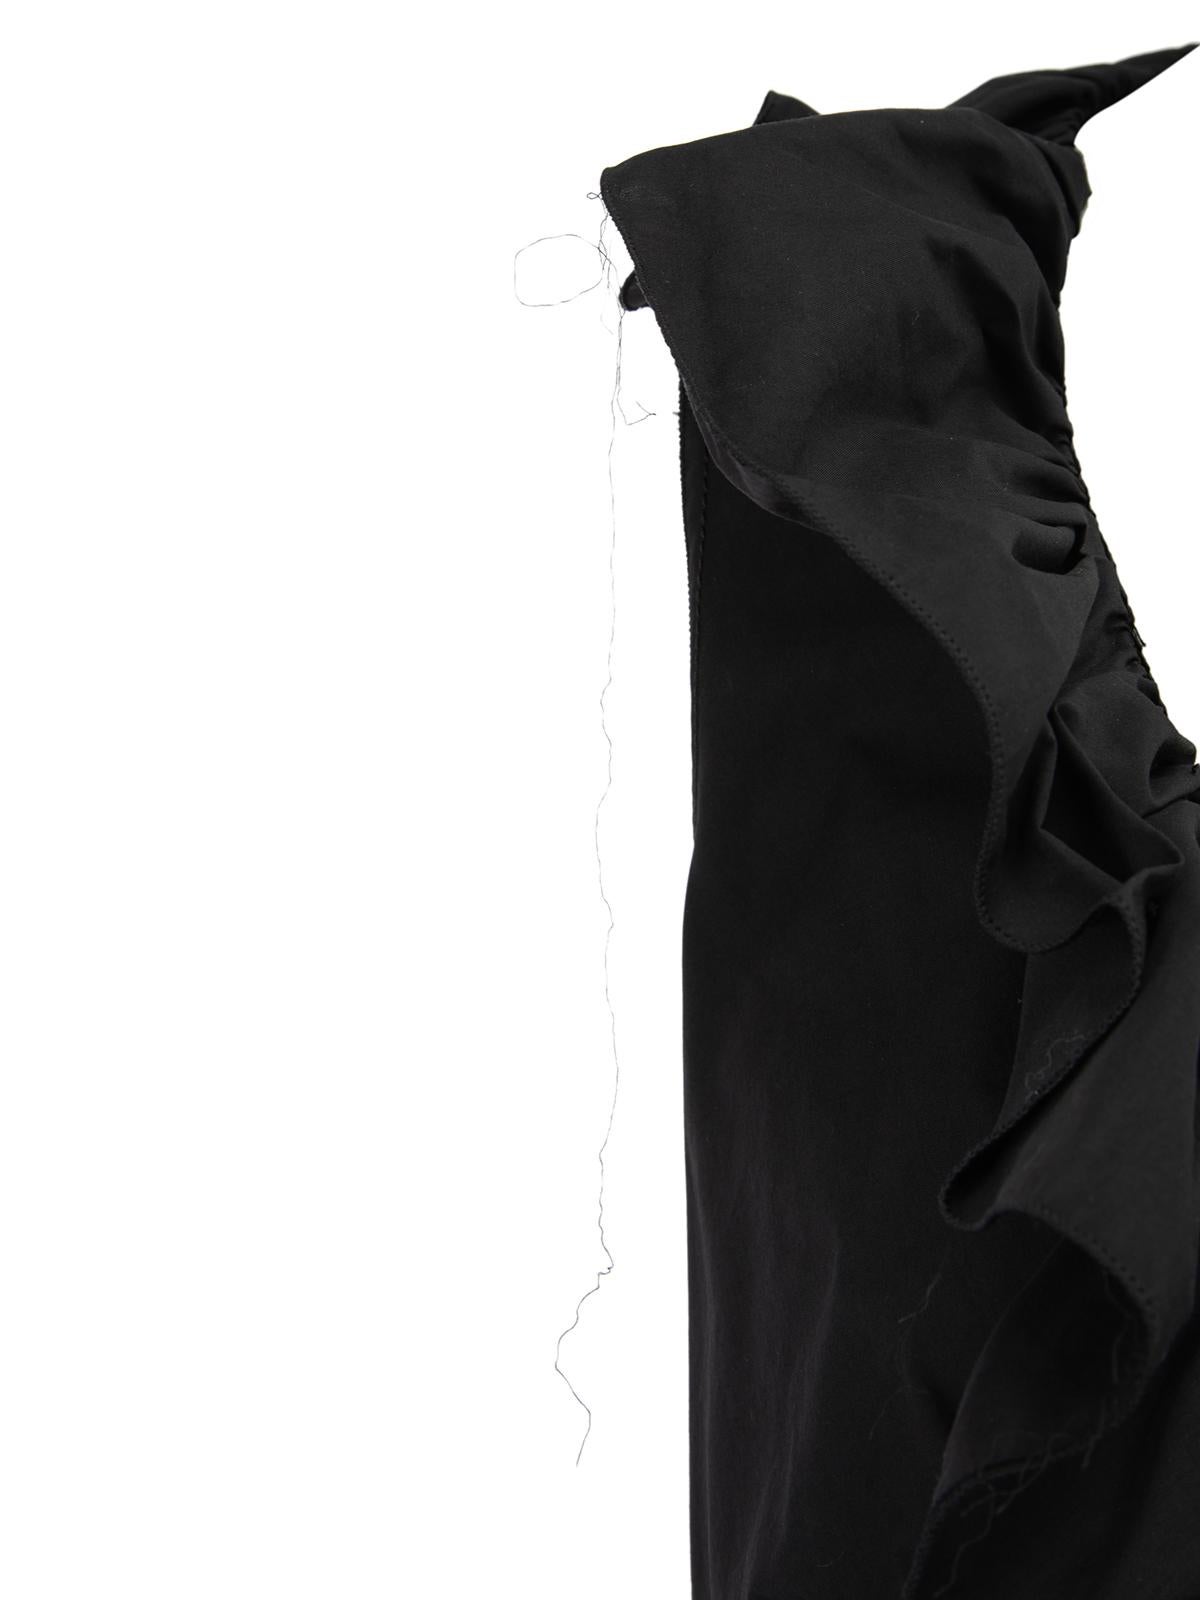 Prada - Robe à col roulé noire pour femme - Pré-alloué 1